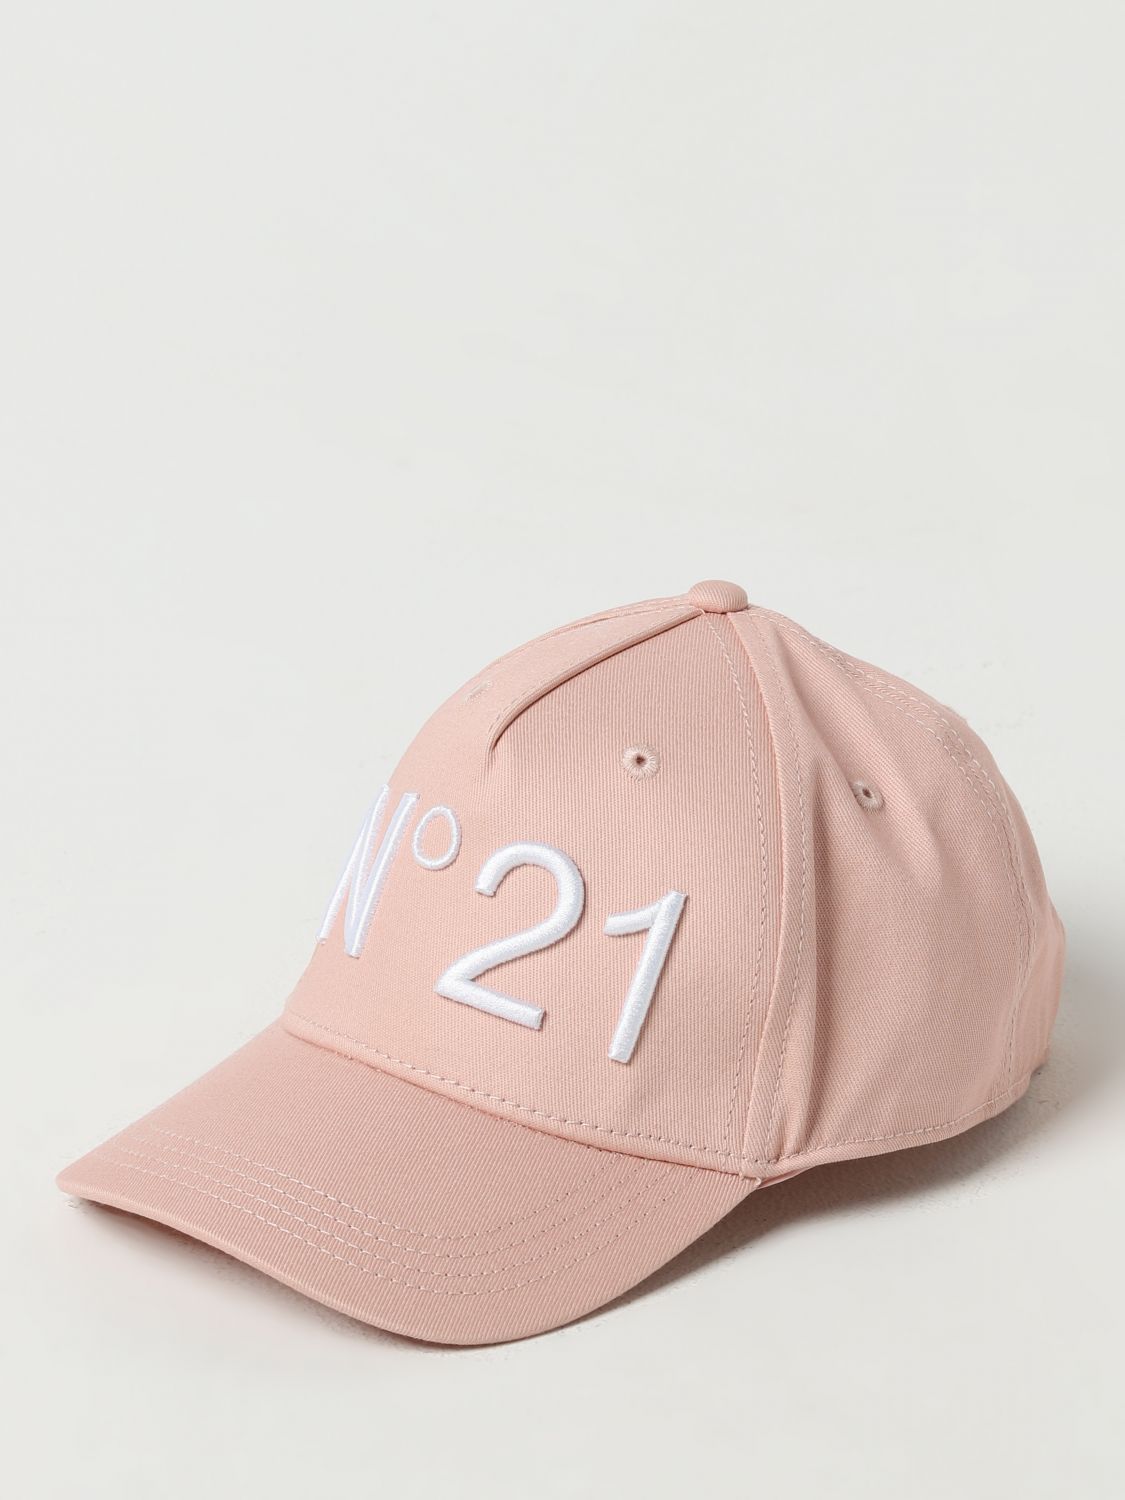 Shop N°21 Girls' Hats N° 21 Kids Color Pink